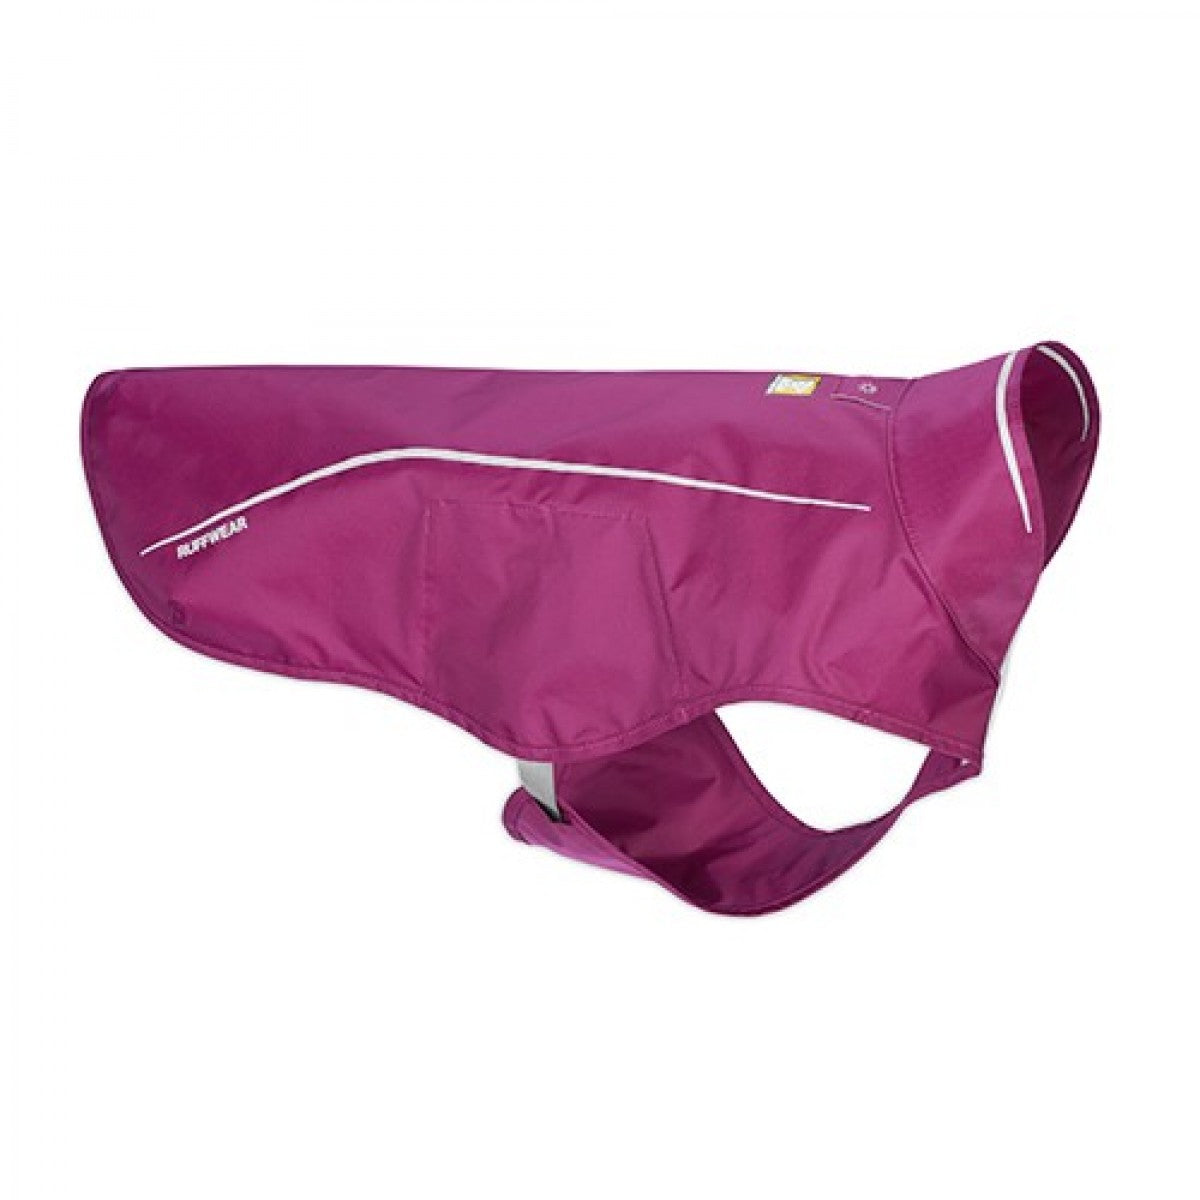 Load image into Gallery viewer, Ruffwear - Sun Shower (Rain Jacket) - Purple Dusk
